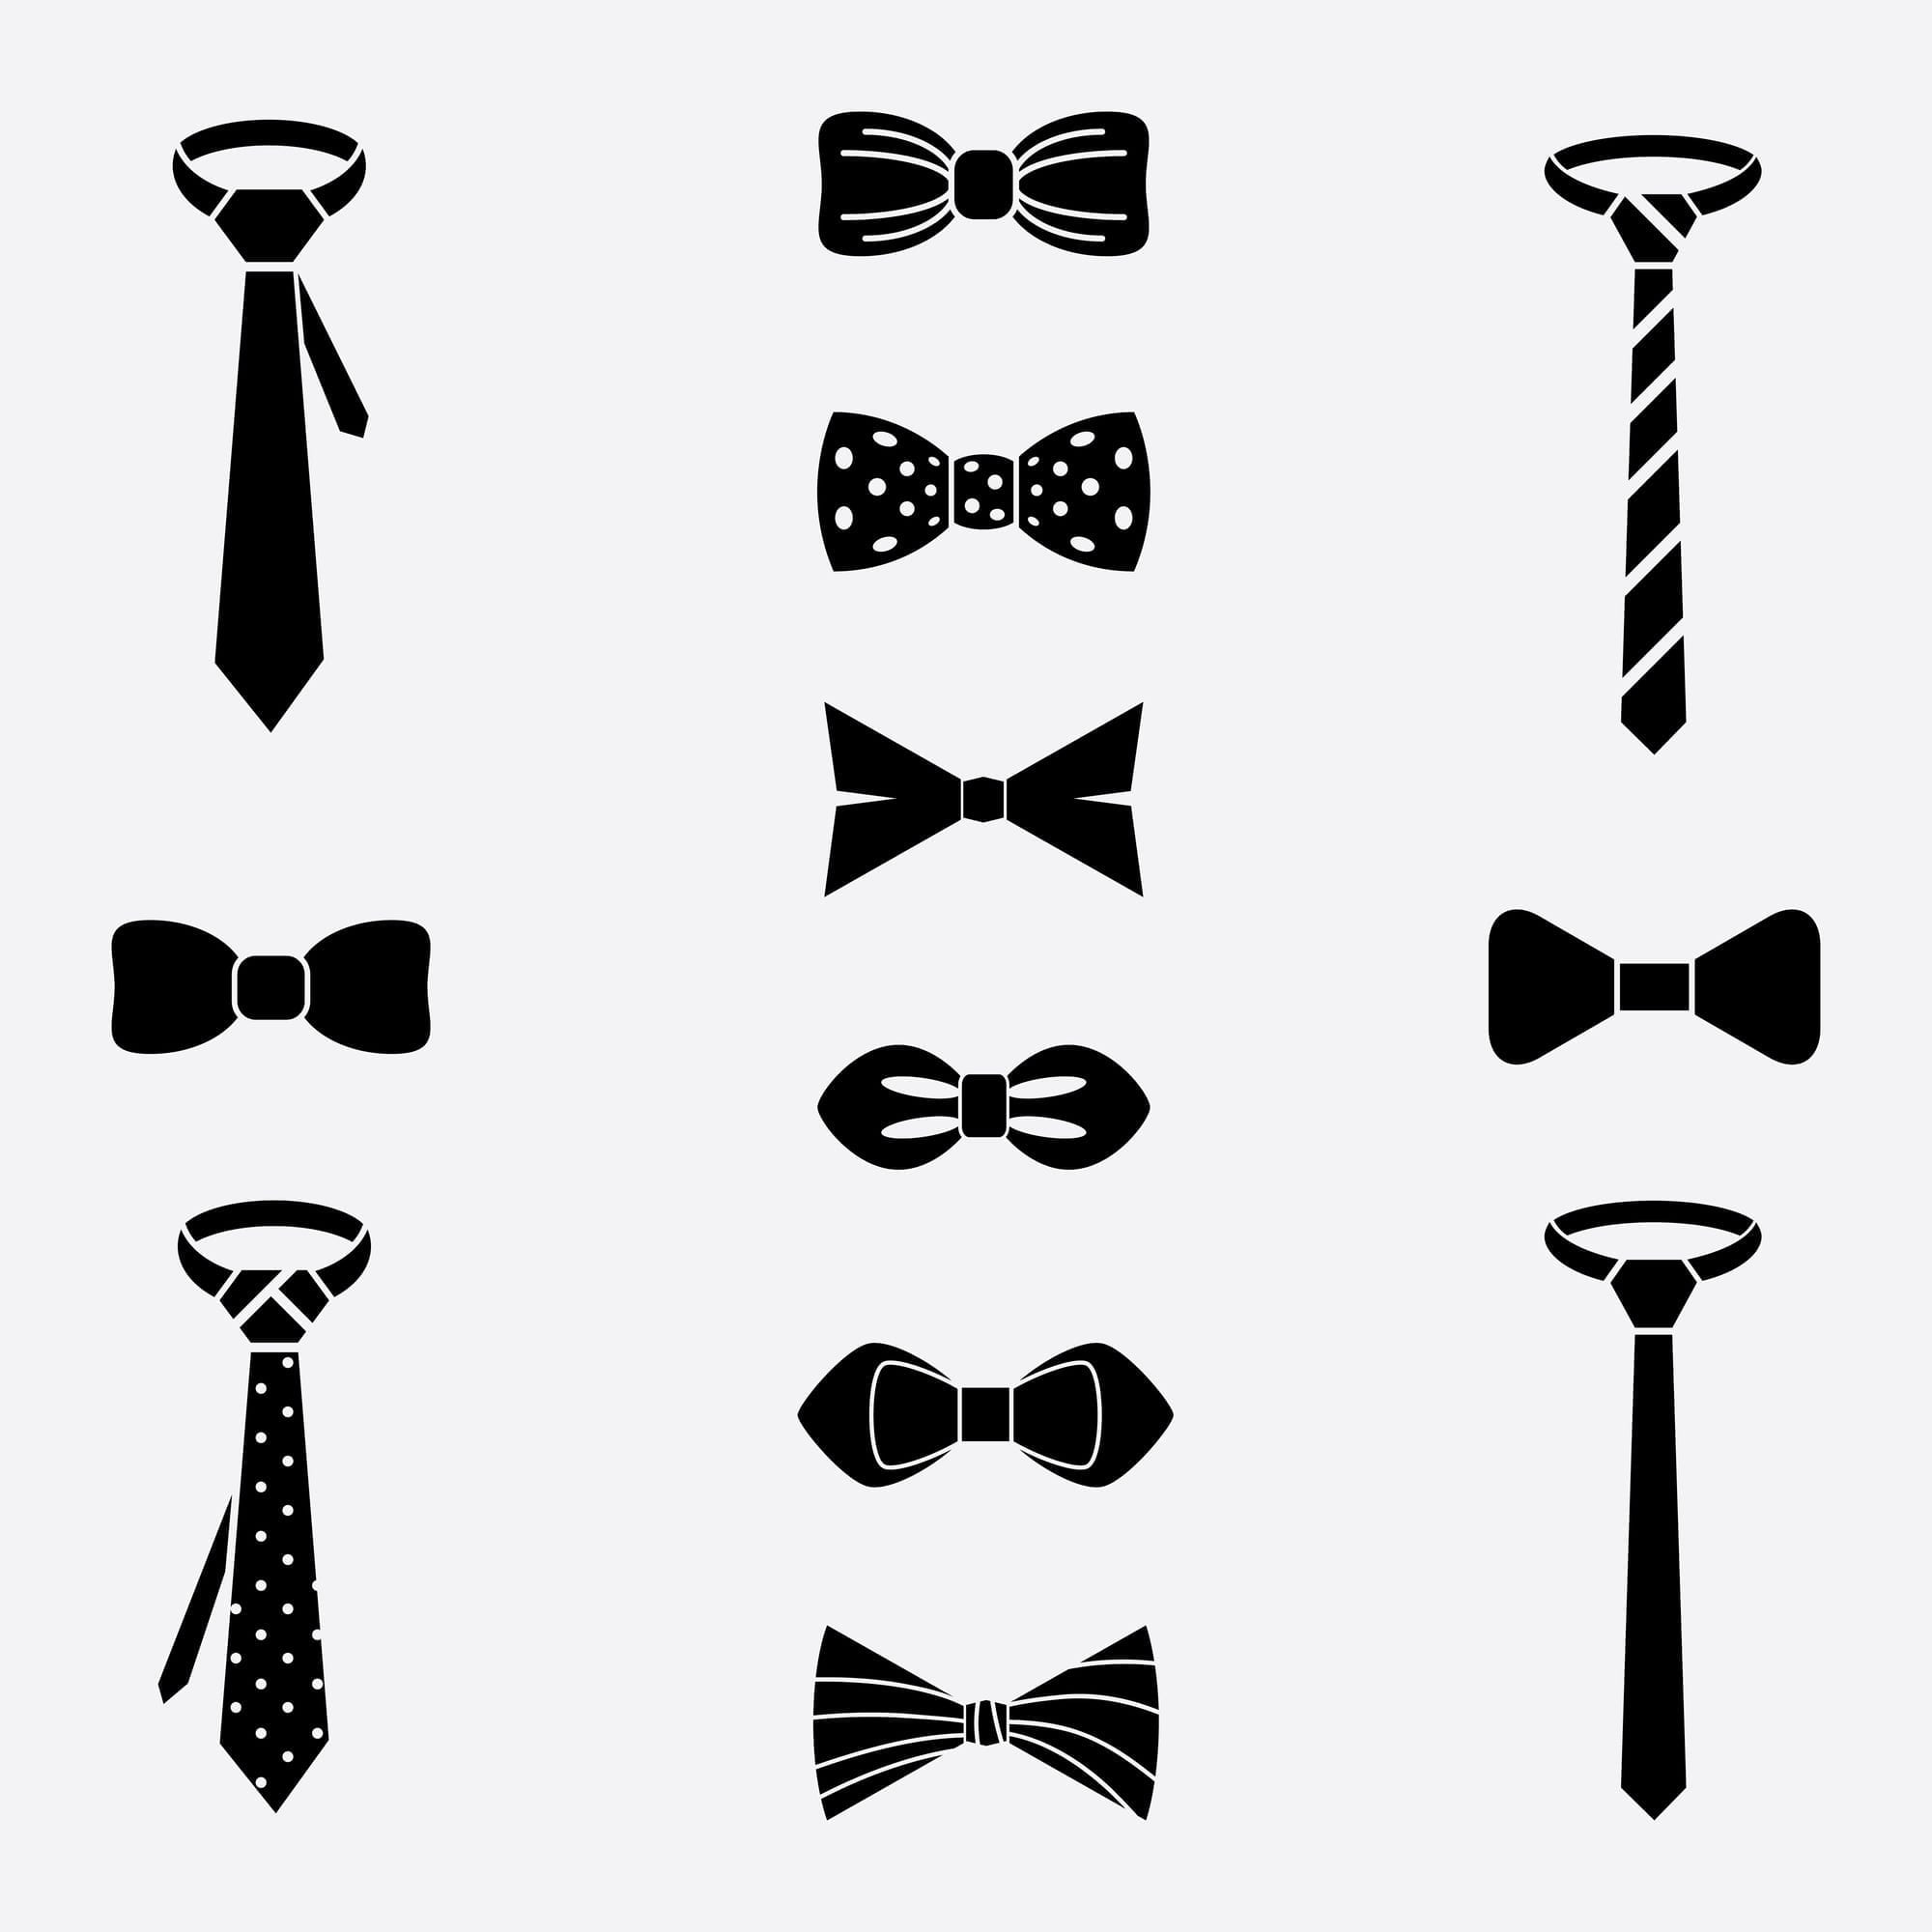 Men's Tie Styles: Four-In-Hand Necktie, Skinny Tie, Bowtie, Cravat, Ascot